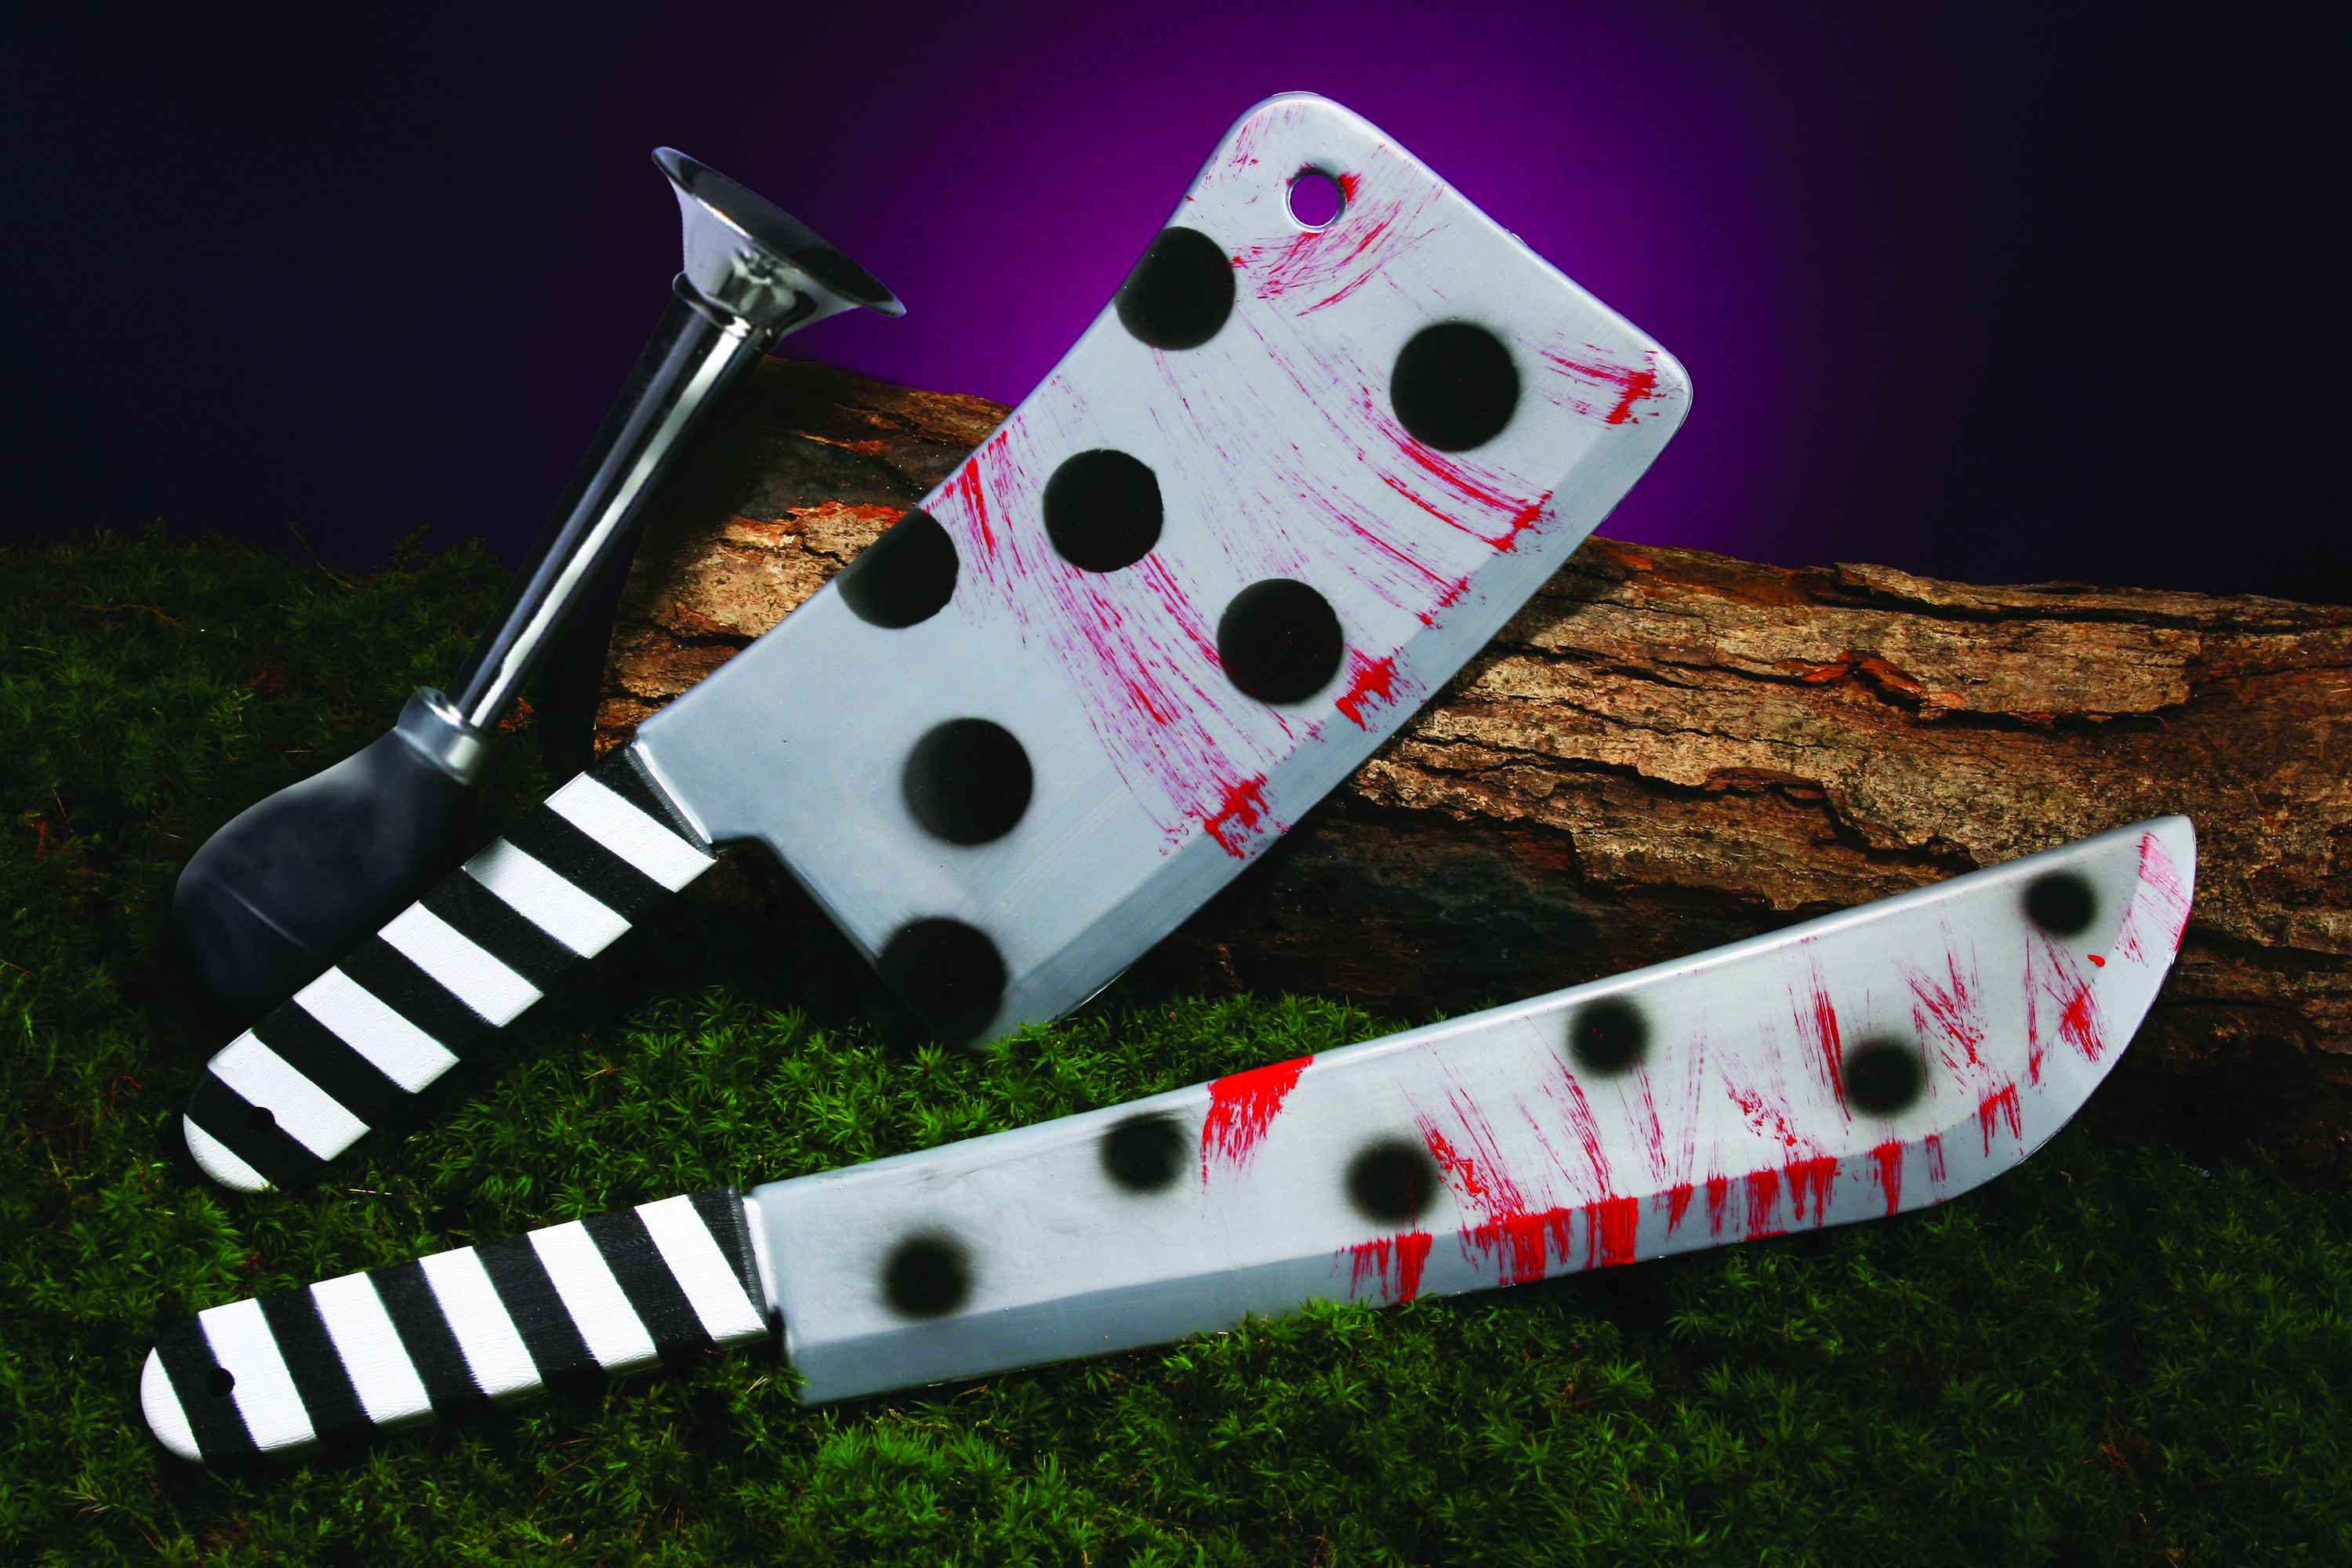 ערכת סכיני הליצן הרוצח - 2 פריטים